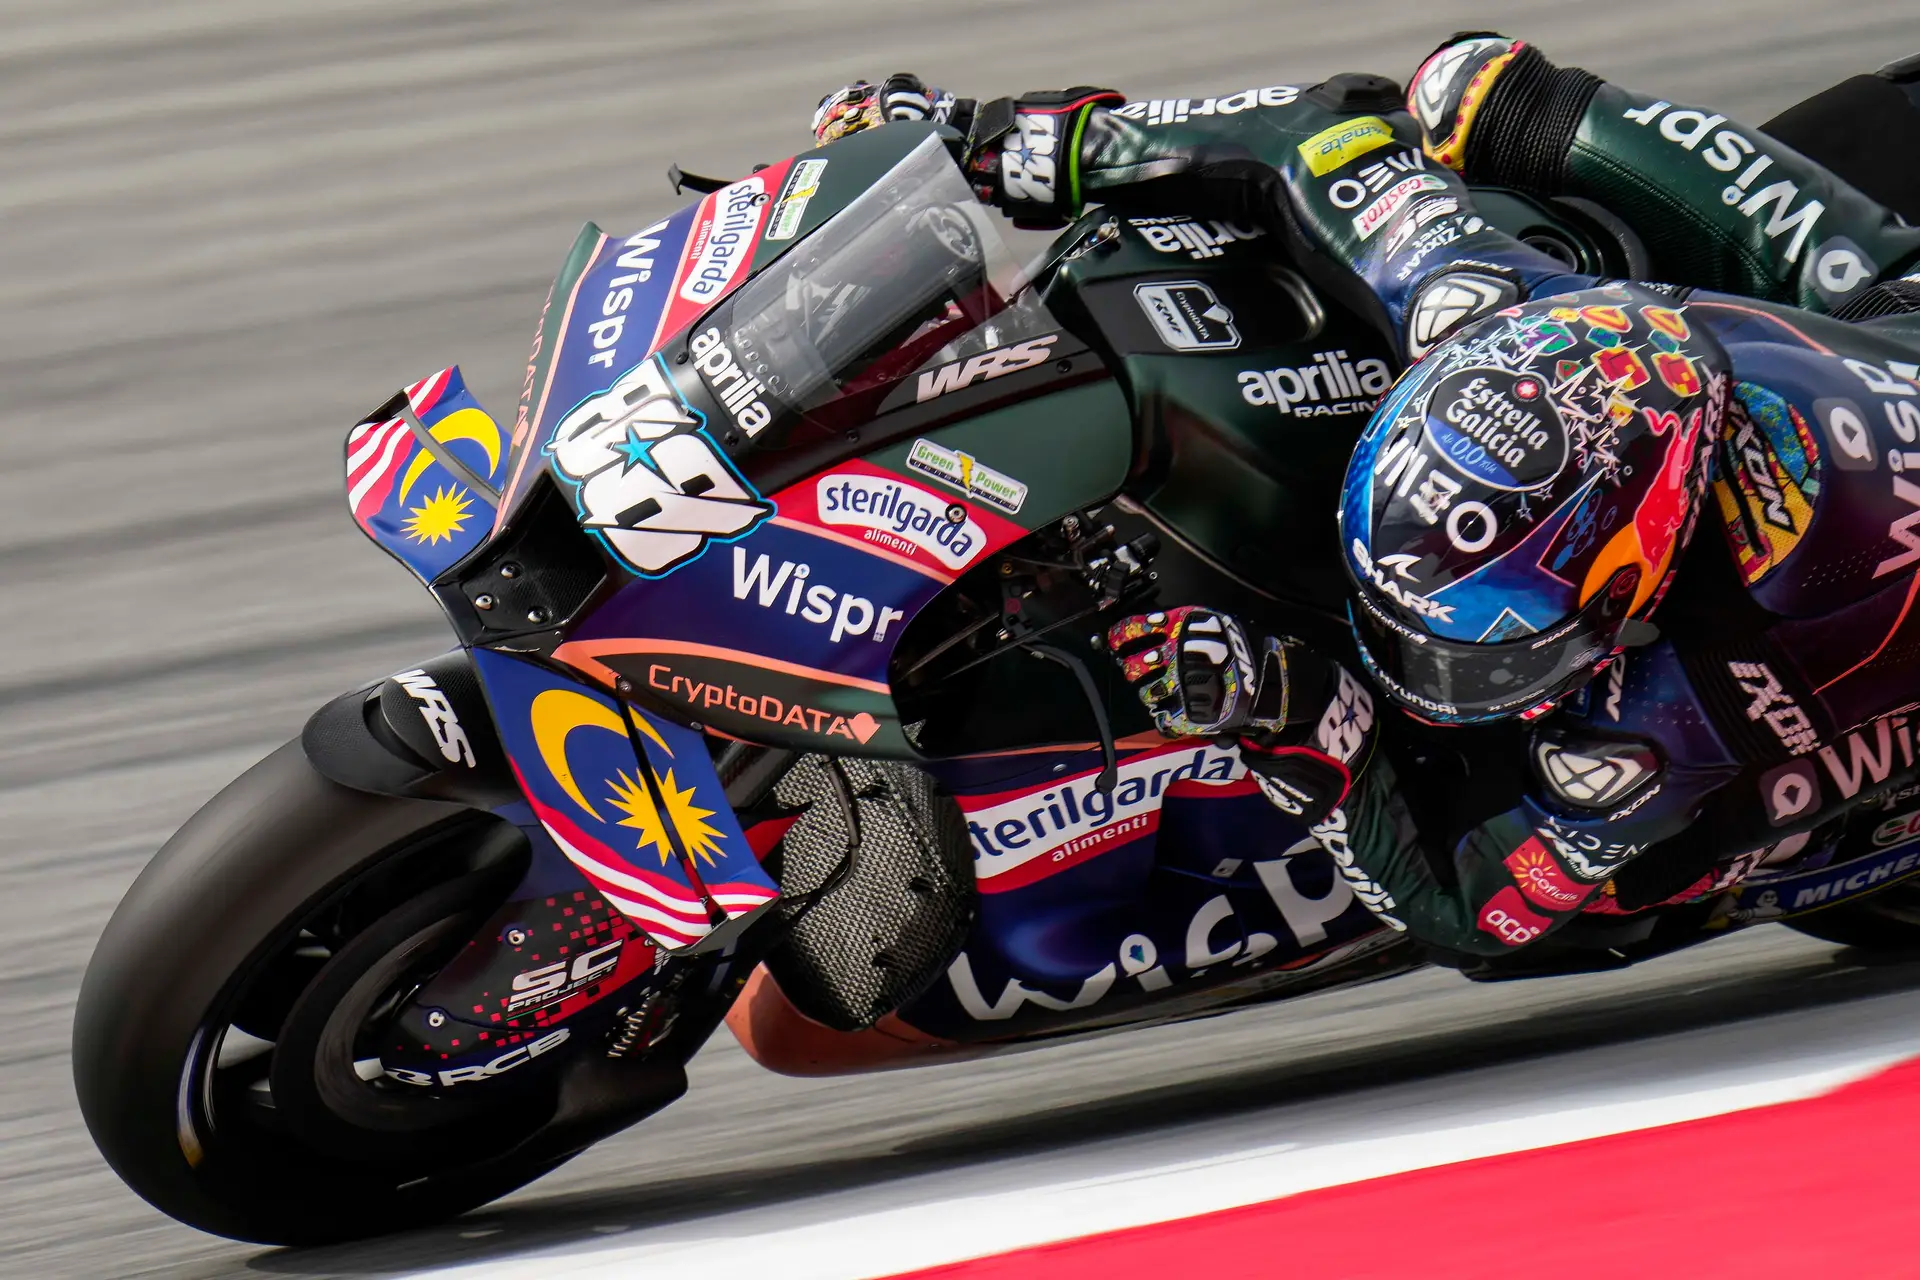 MotoGP, Miguel Oliveira sobre a corrida Sprint: Será um novo desafio para  as equipas” - MotoSport